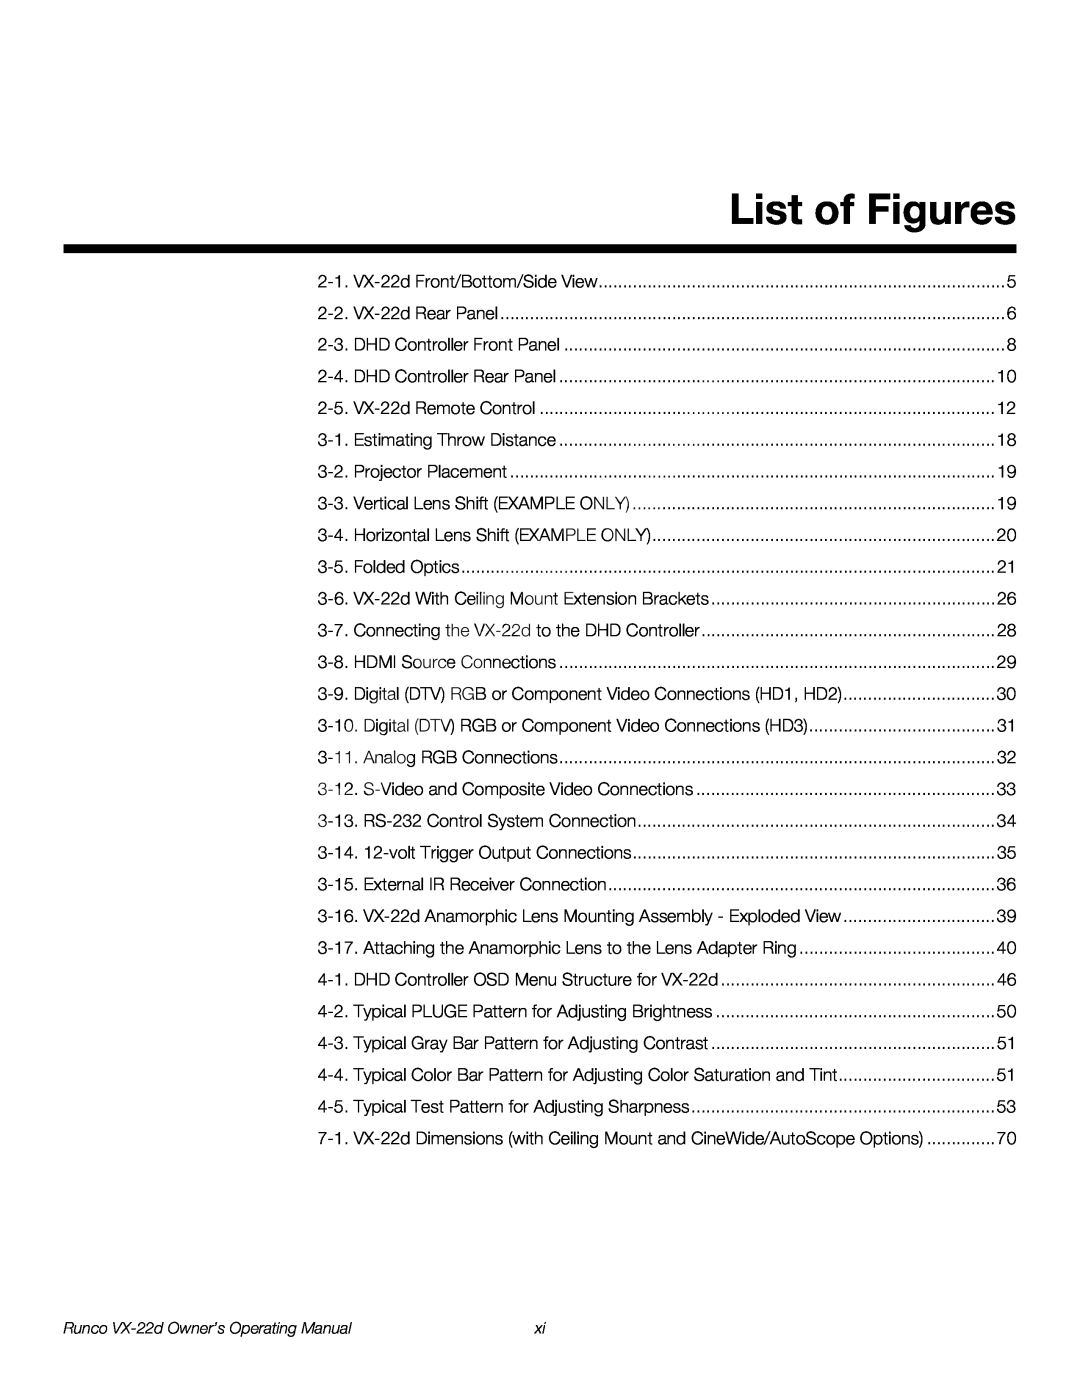 Runco VX-22D manual List of Figures, Runco VX-22d Owner’s Operating Manual 